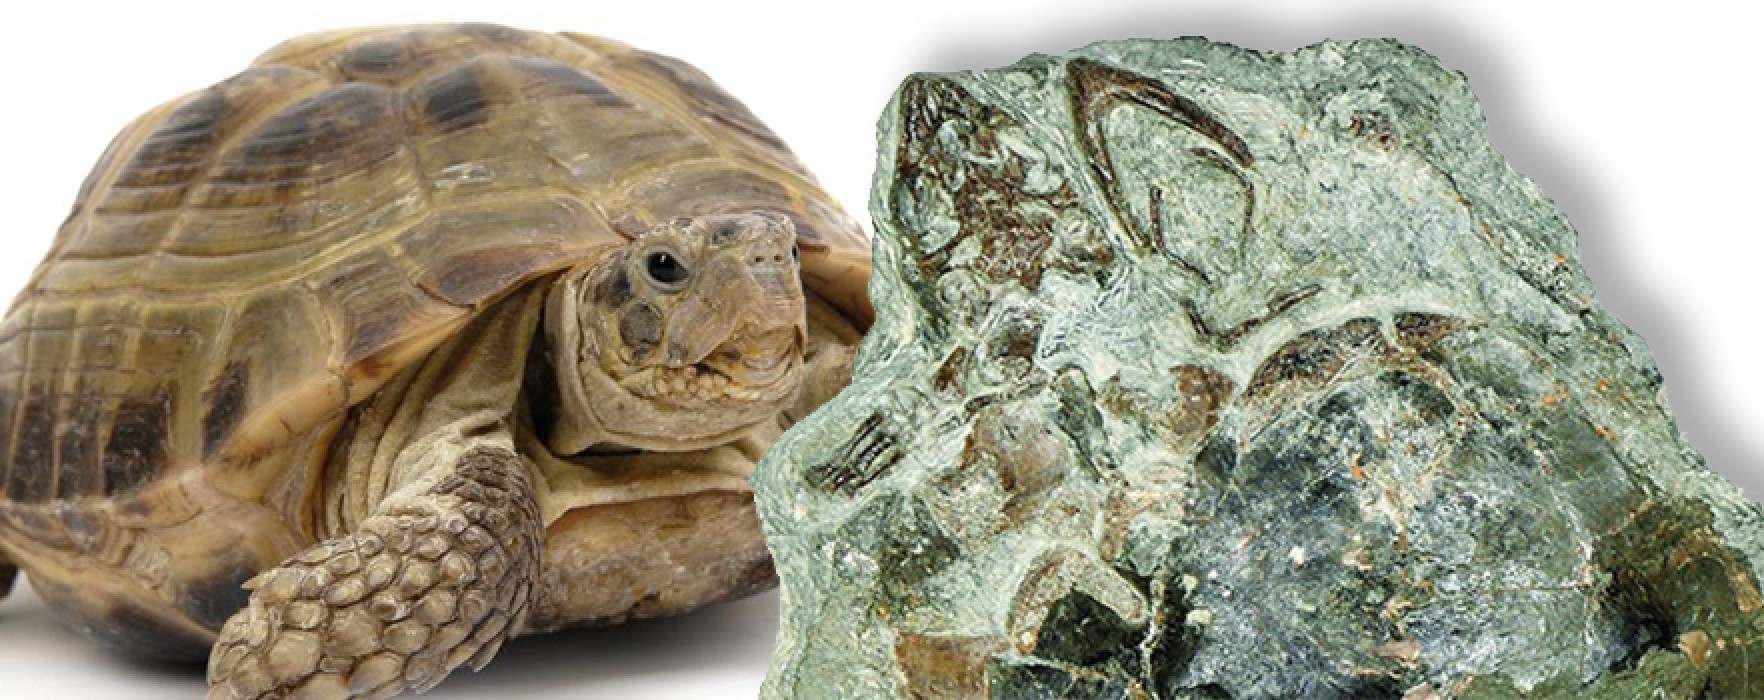 125 Milyon Yıllık Kaplumbağa Fosili Bulundu